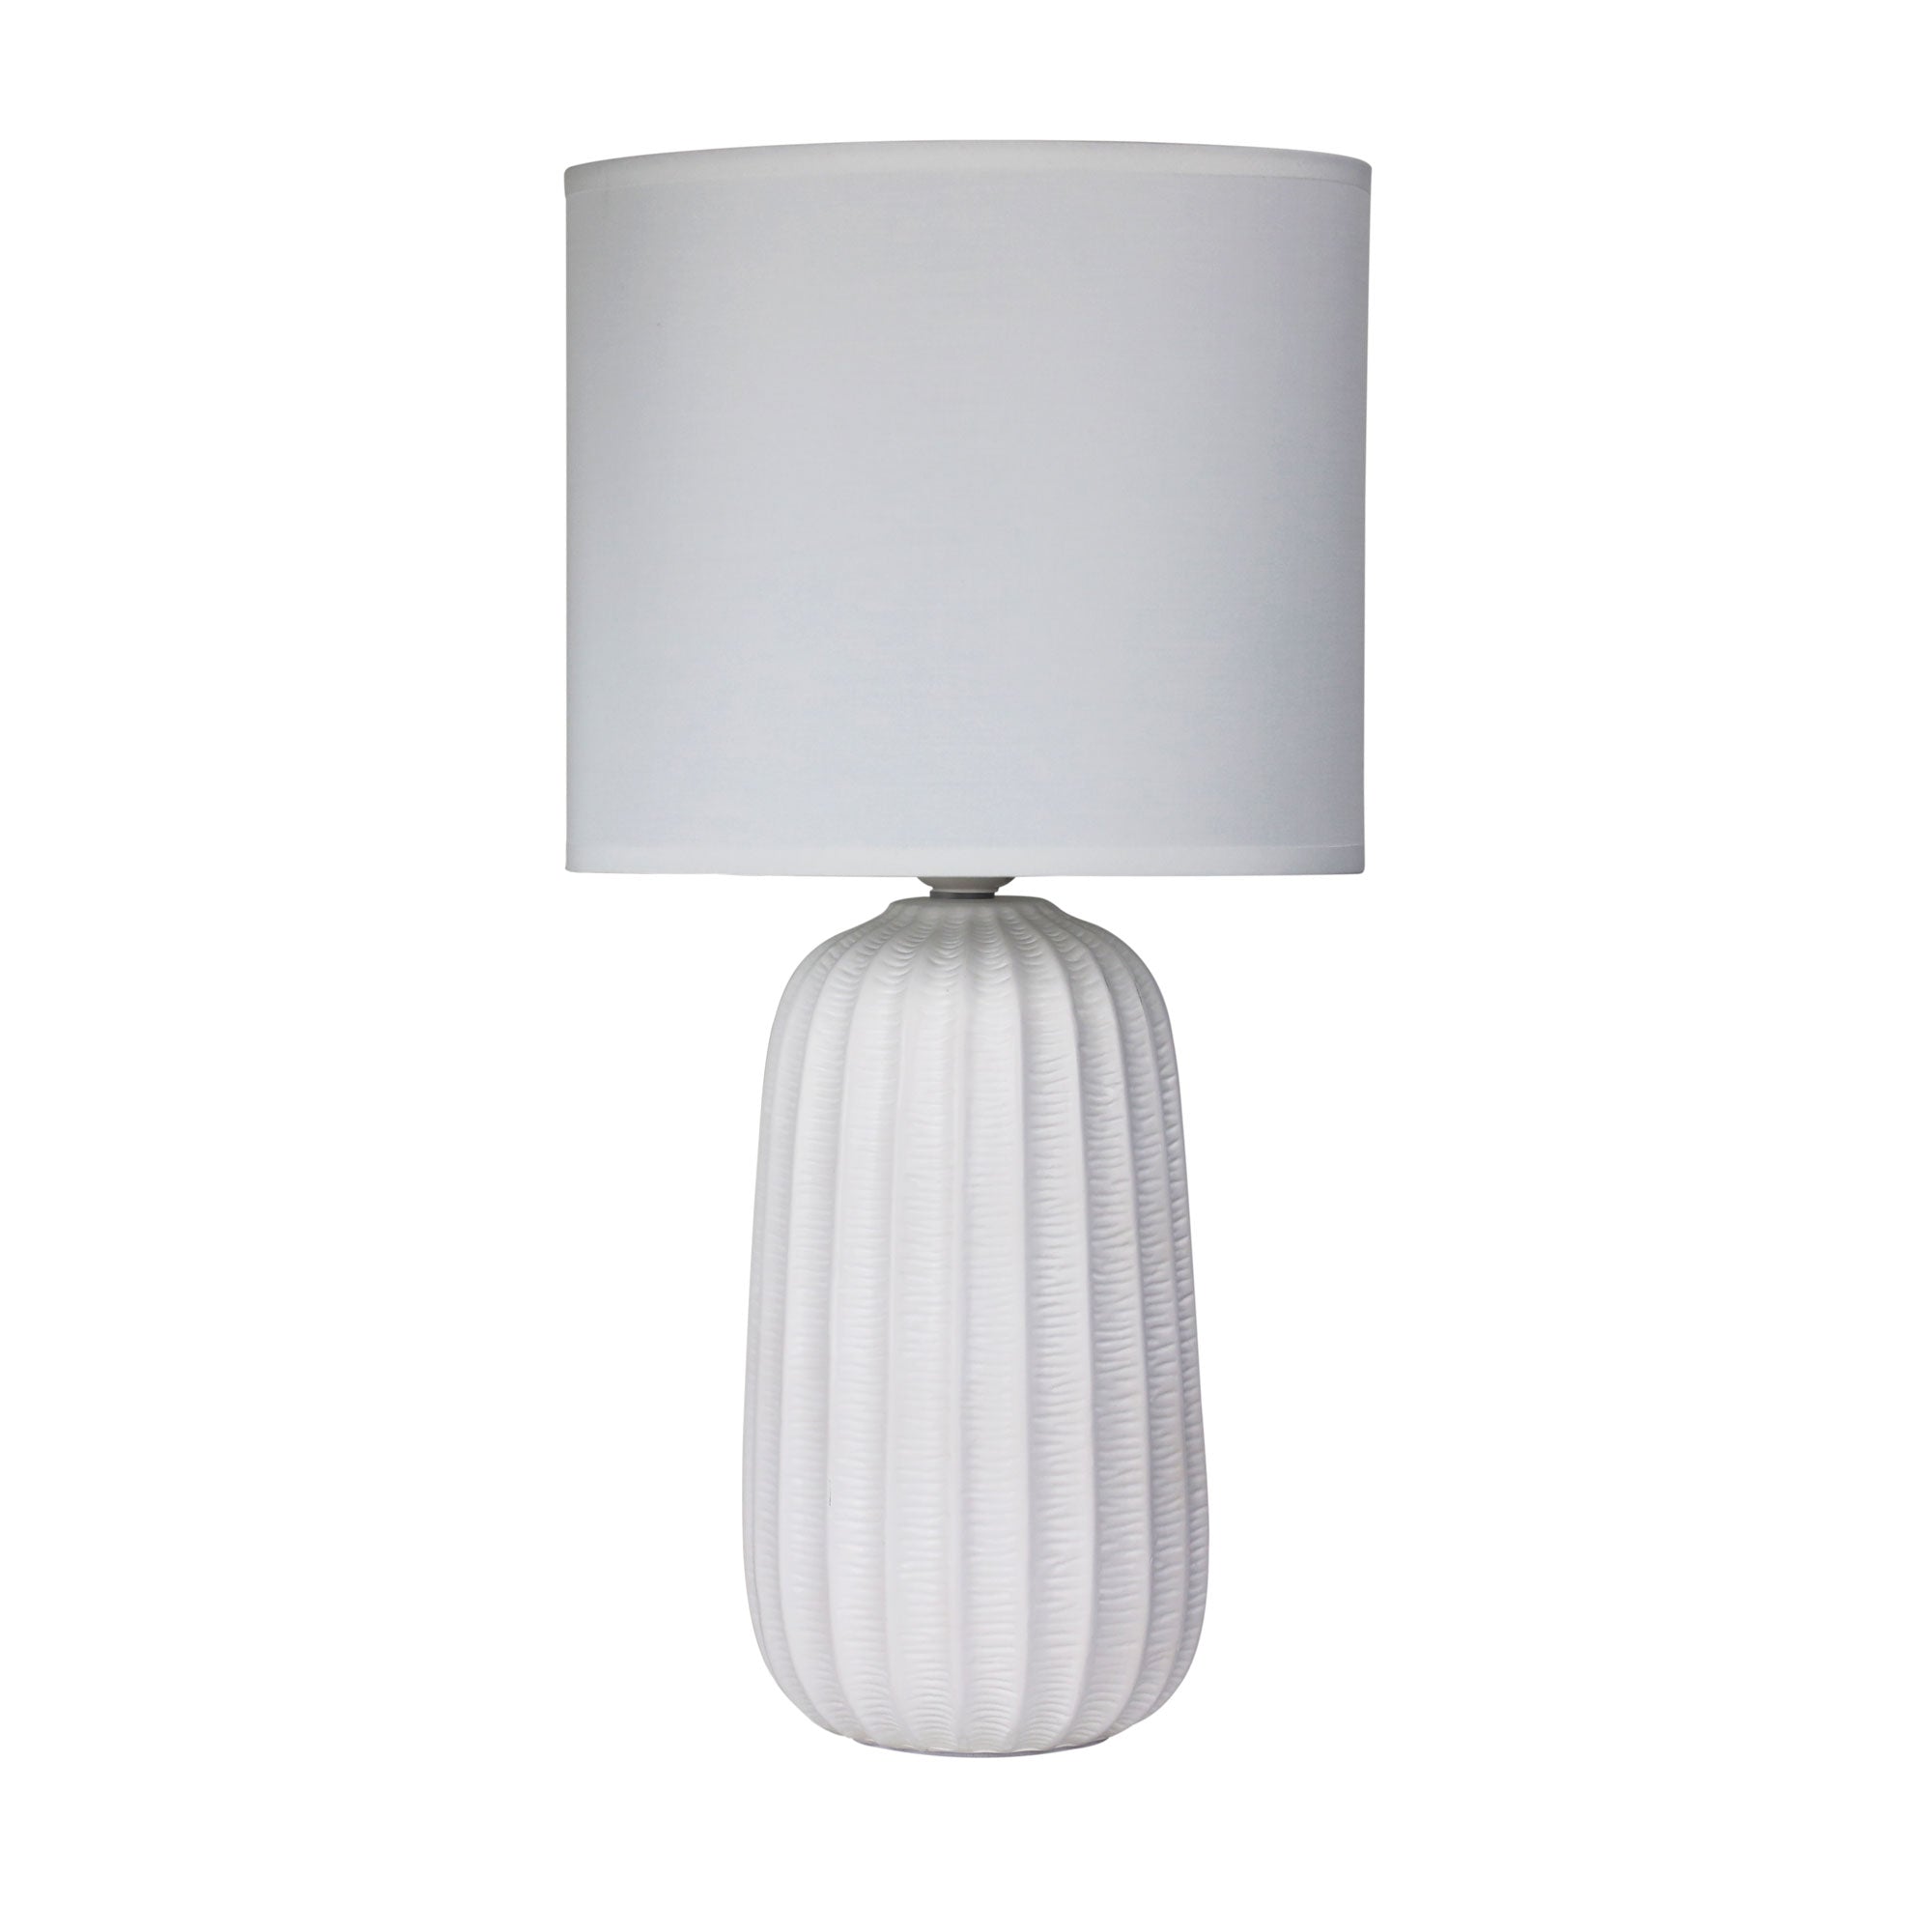 Benjy.25 1 Light Table Lamp White - OL90111WH